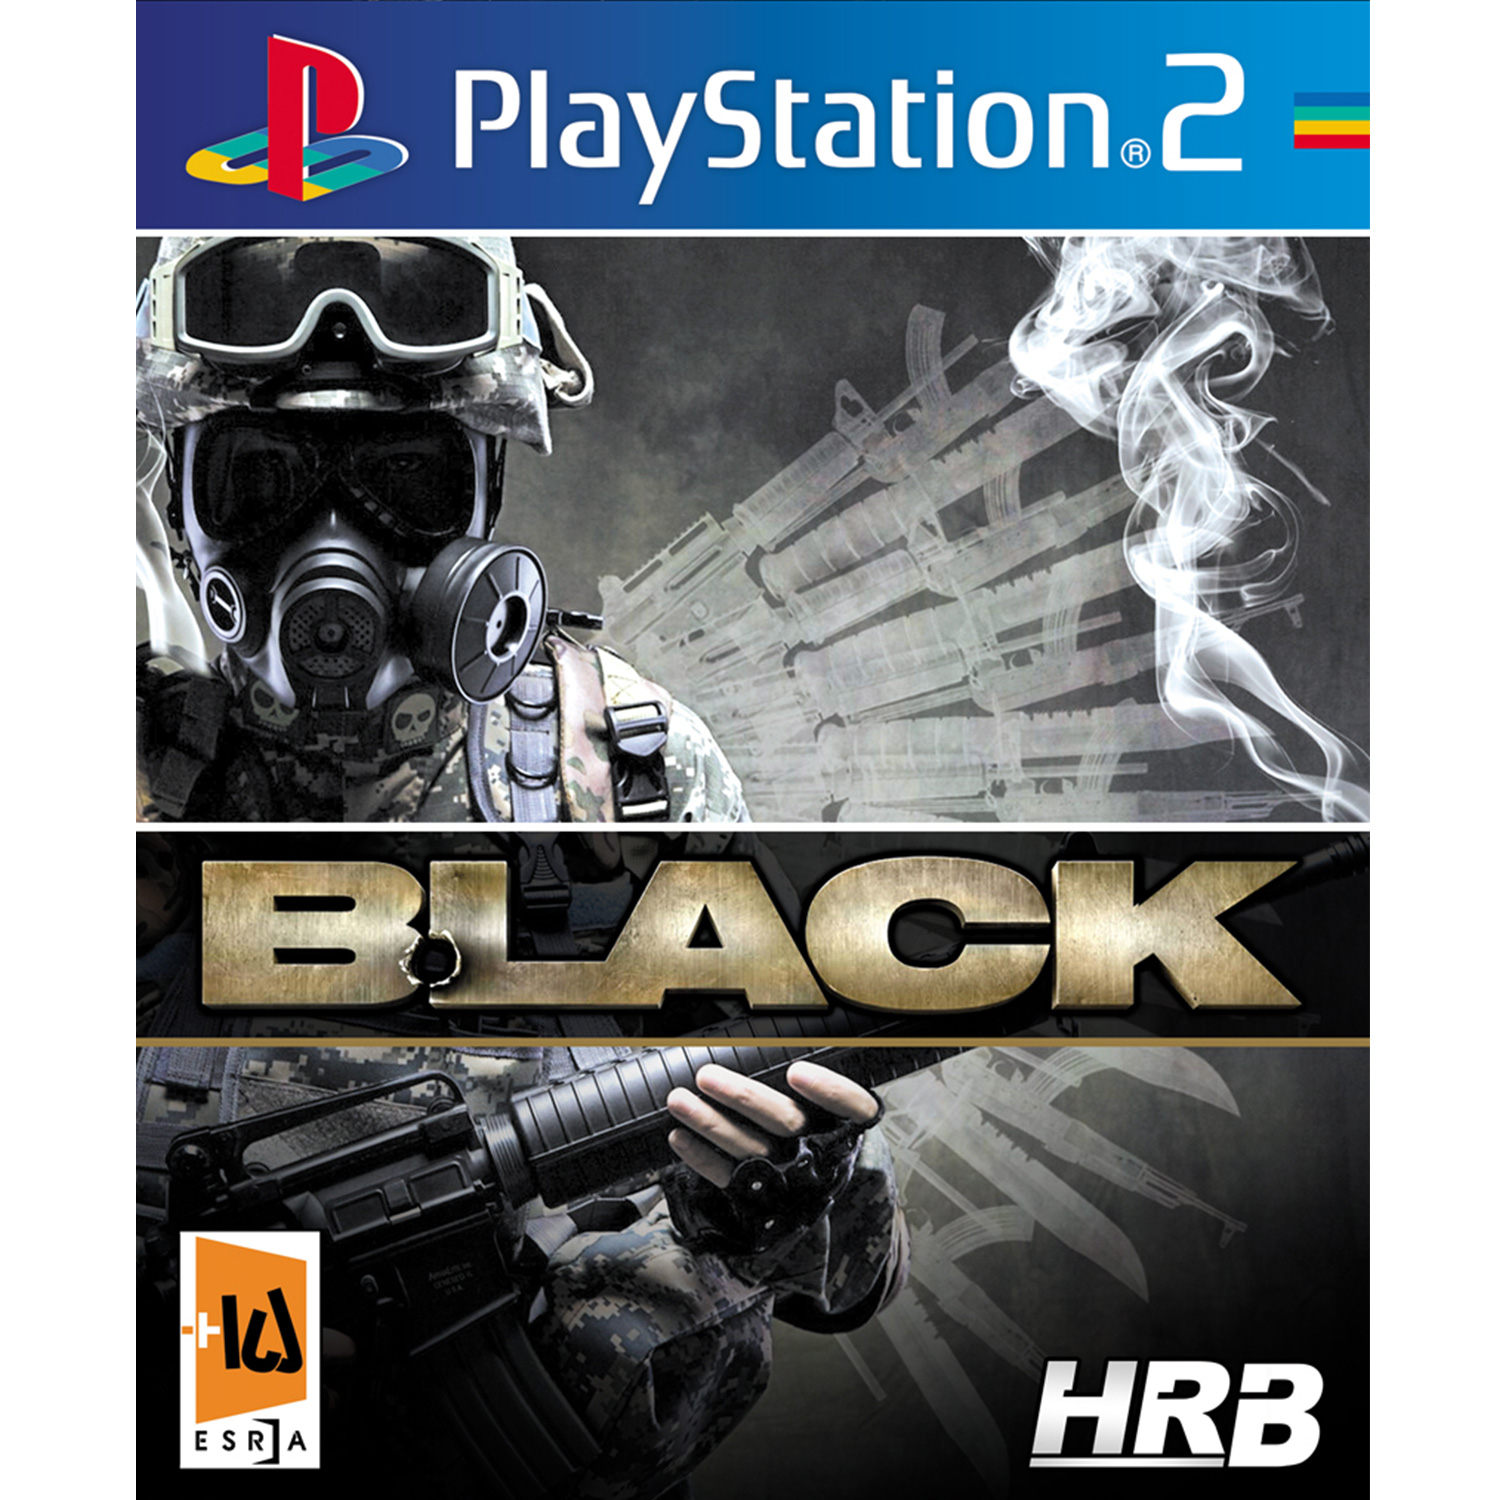 بازی Black مخصوص PS2